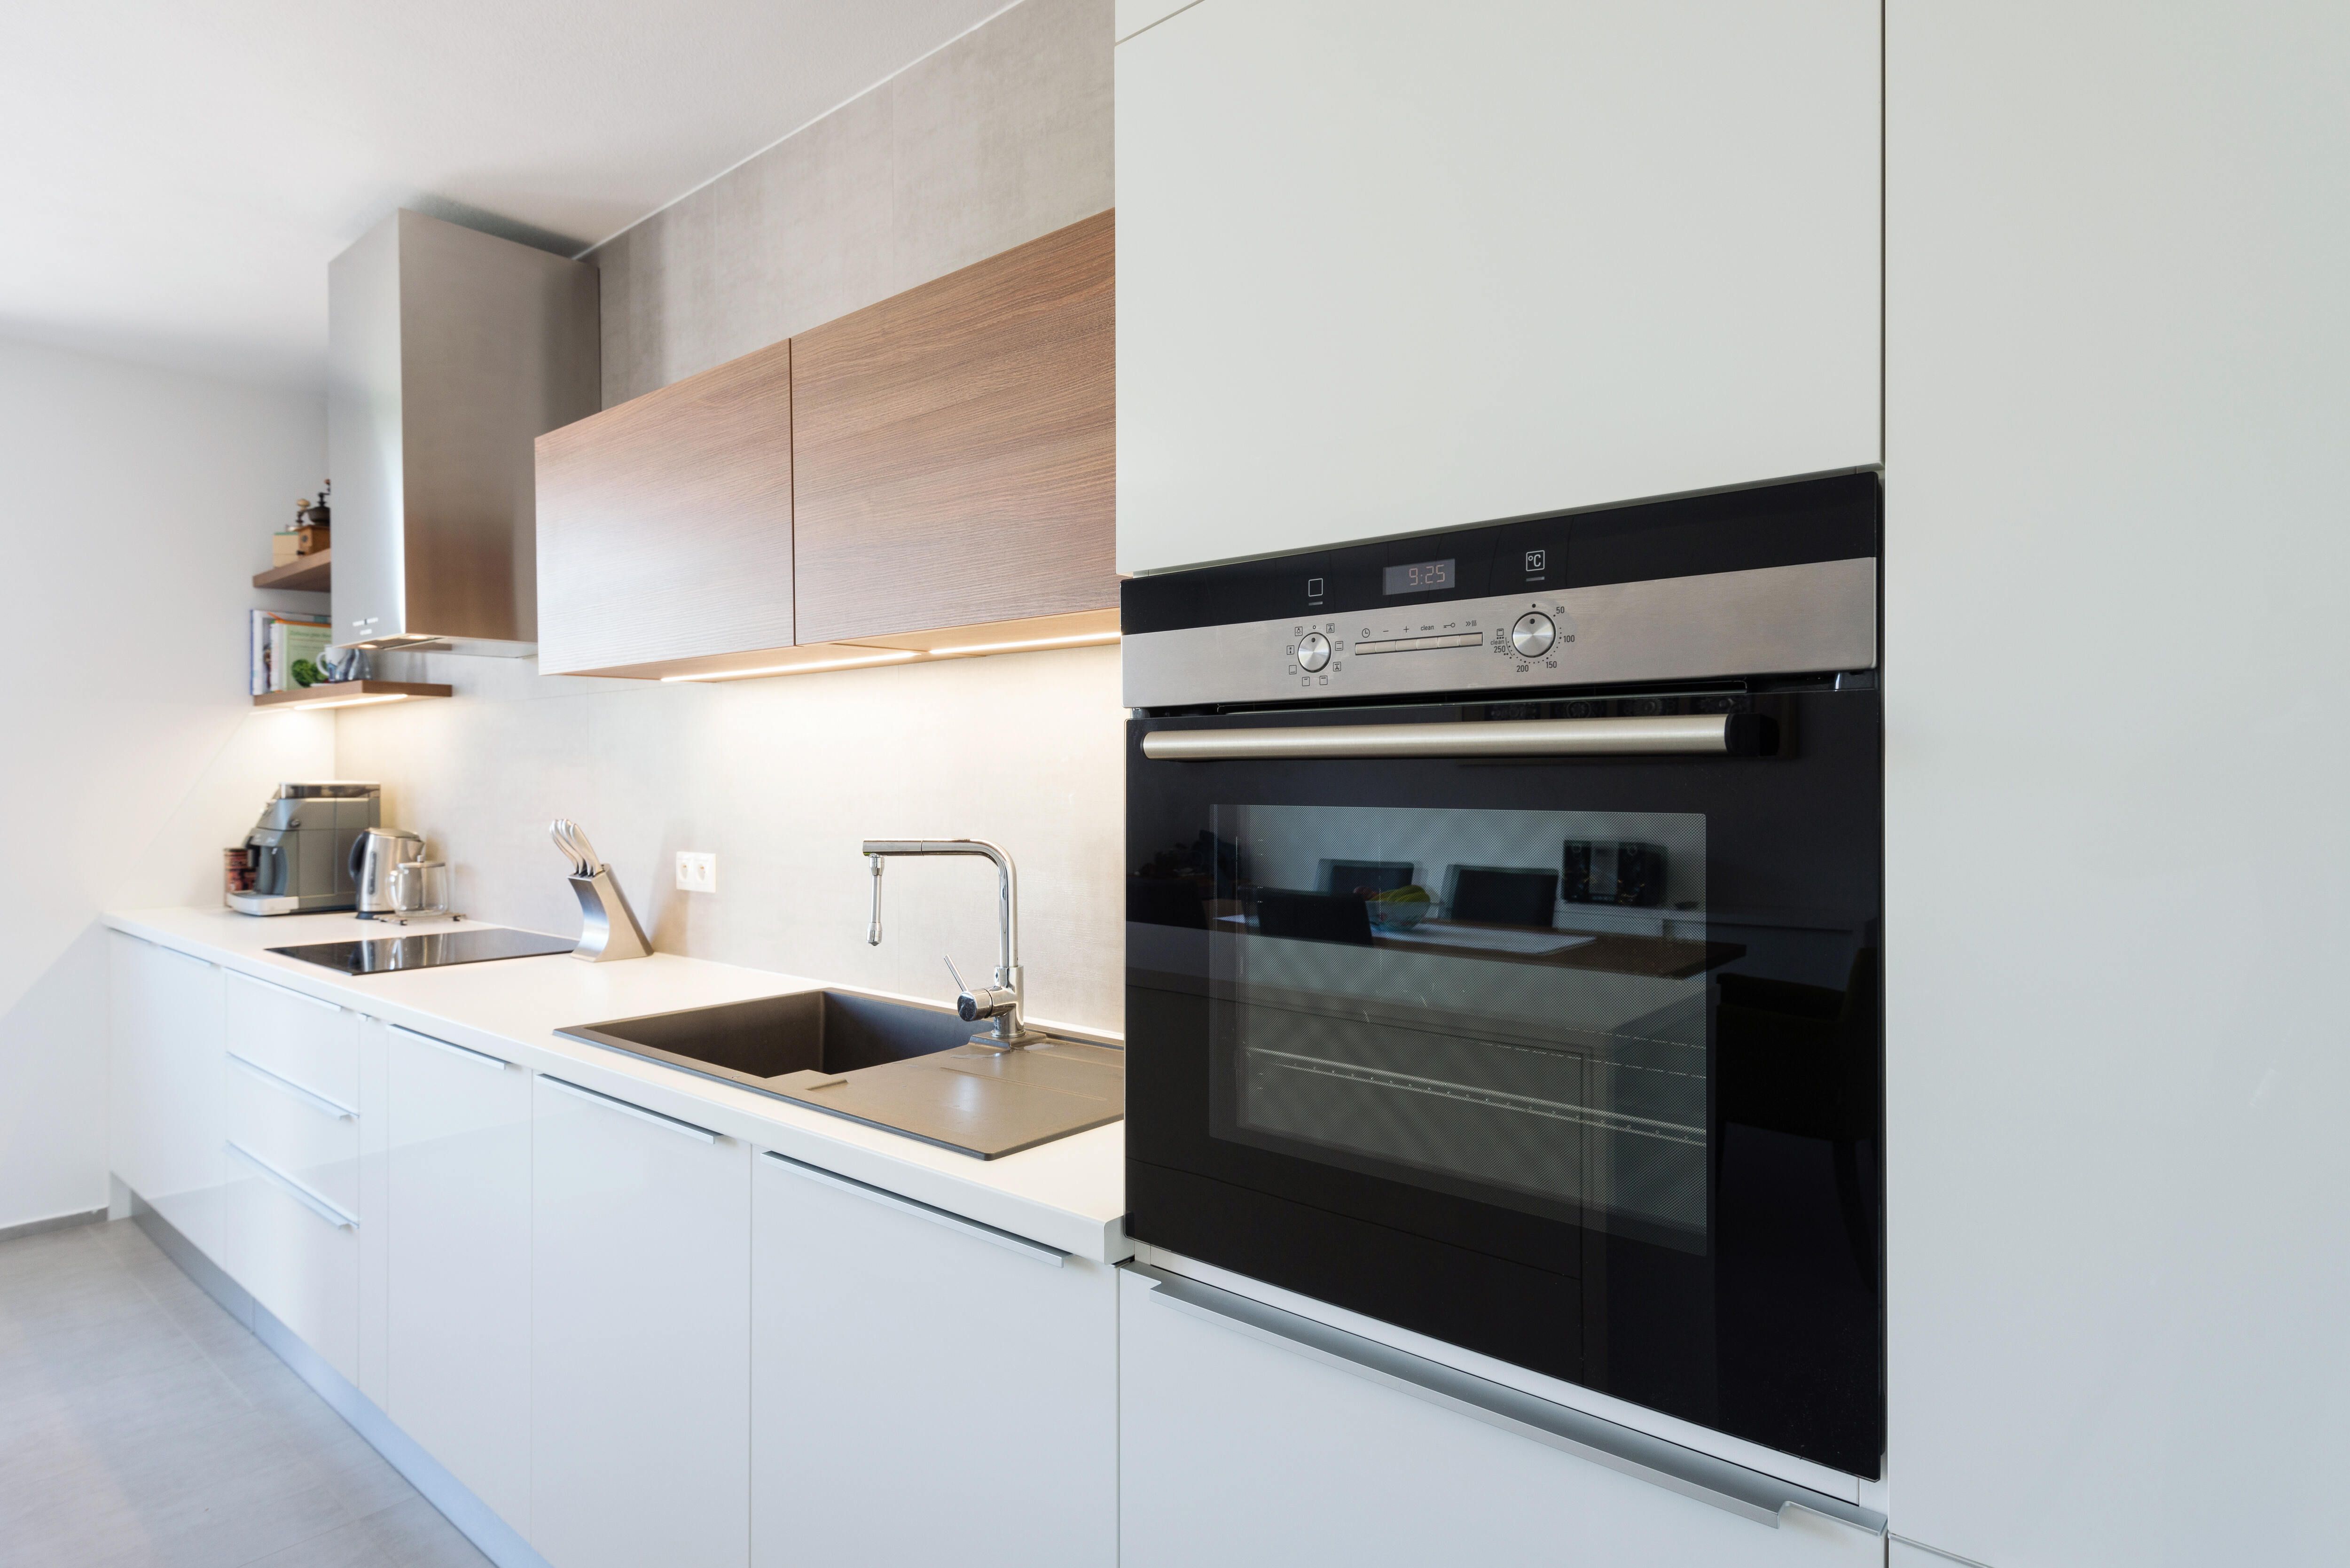 Conosci questo consiglio per pulire il forno a microonde? Semplice ed  efficiente!